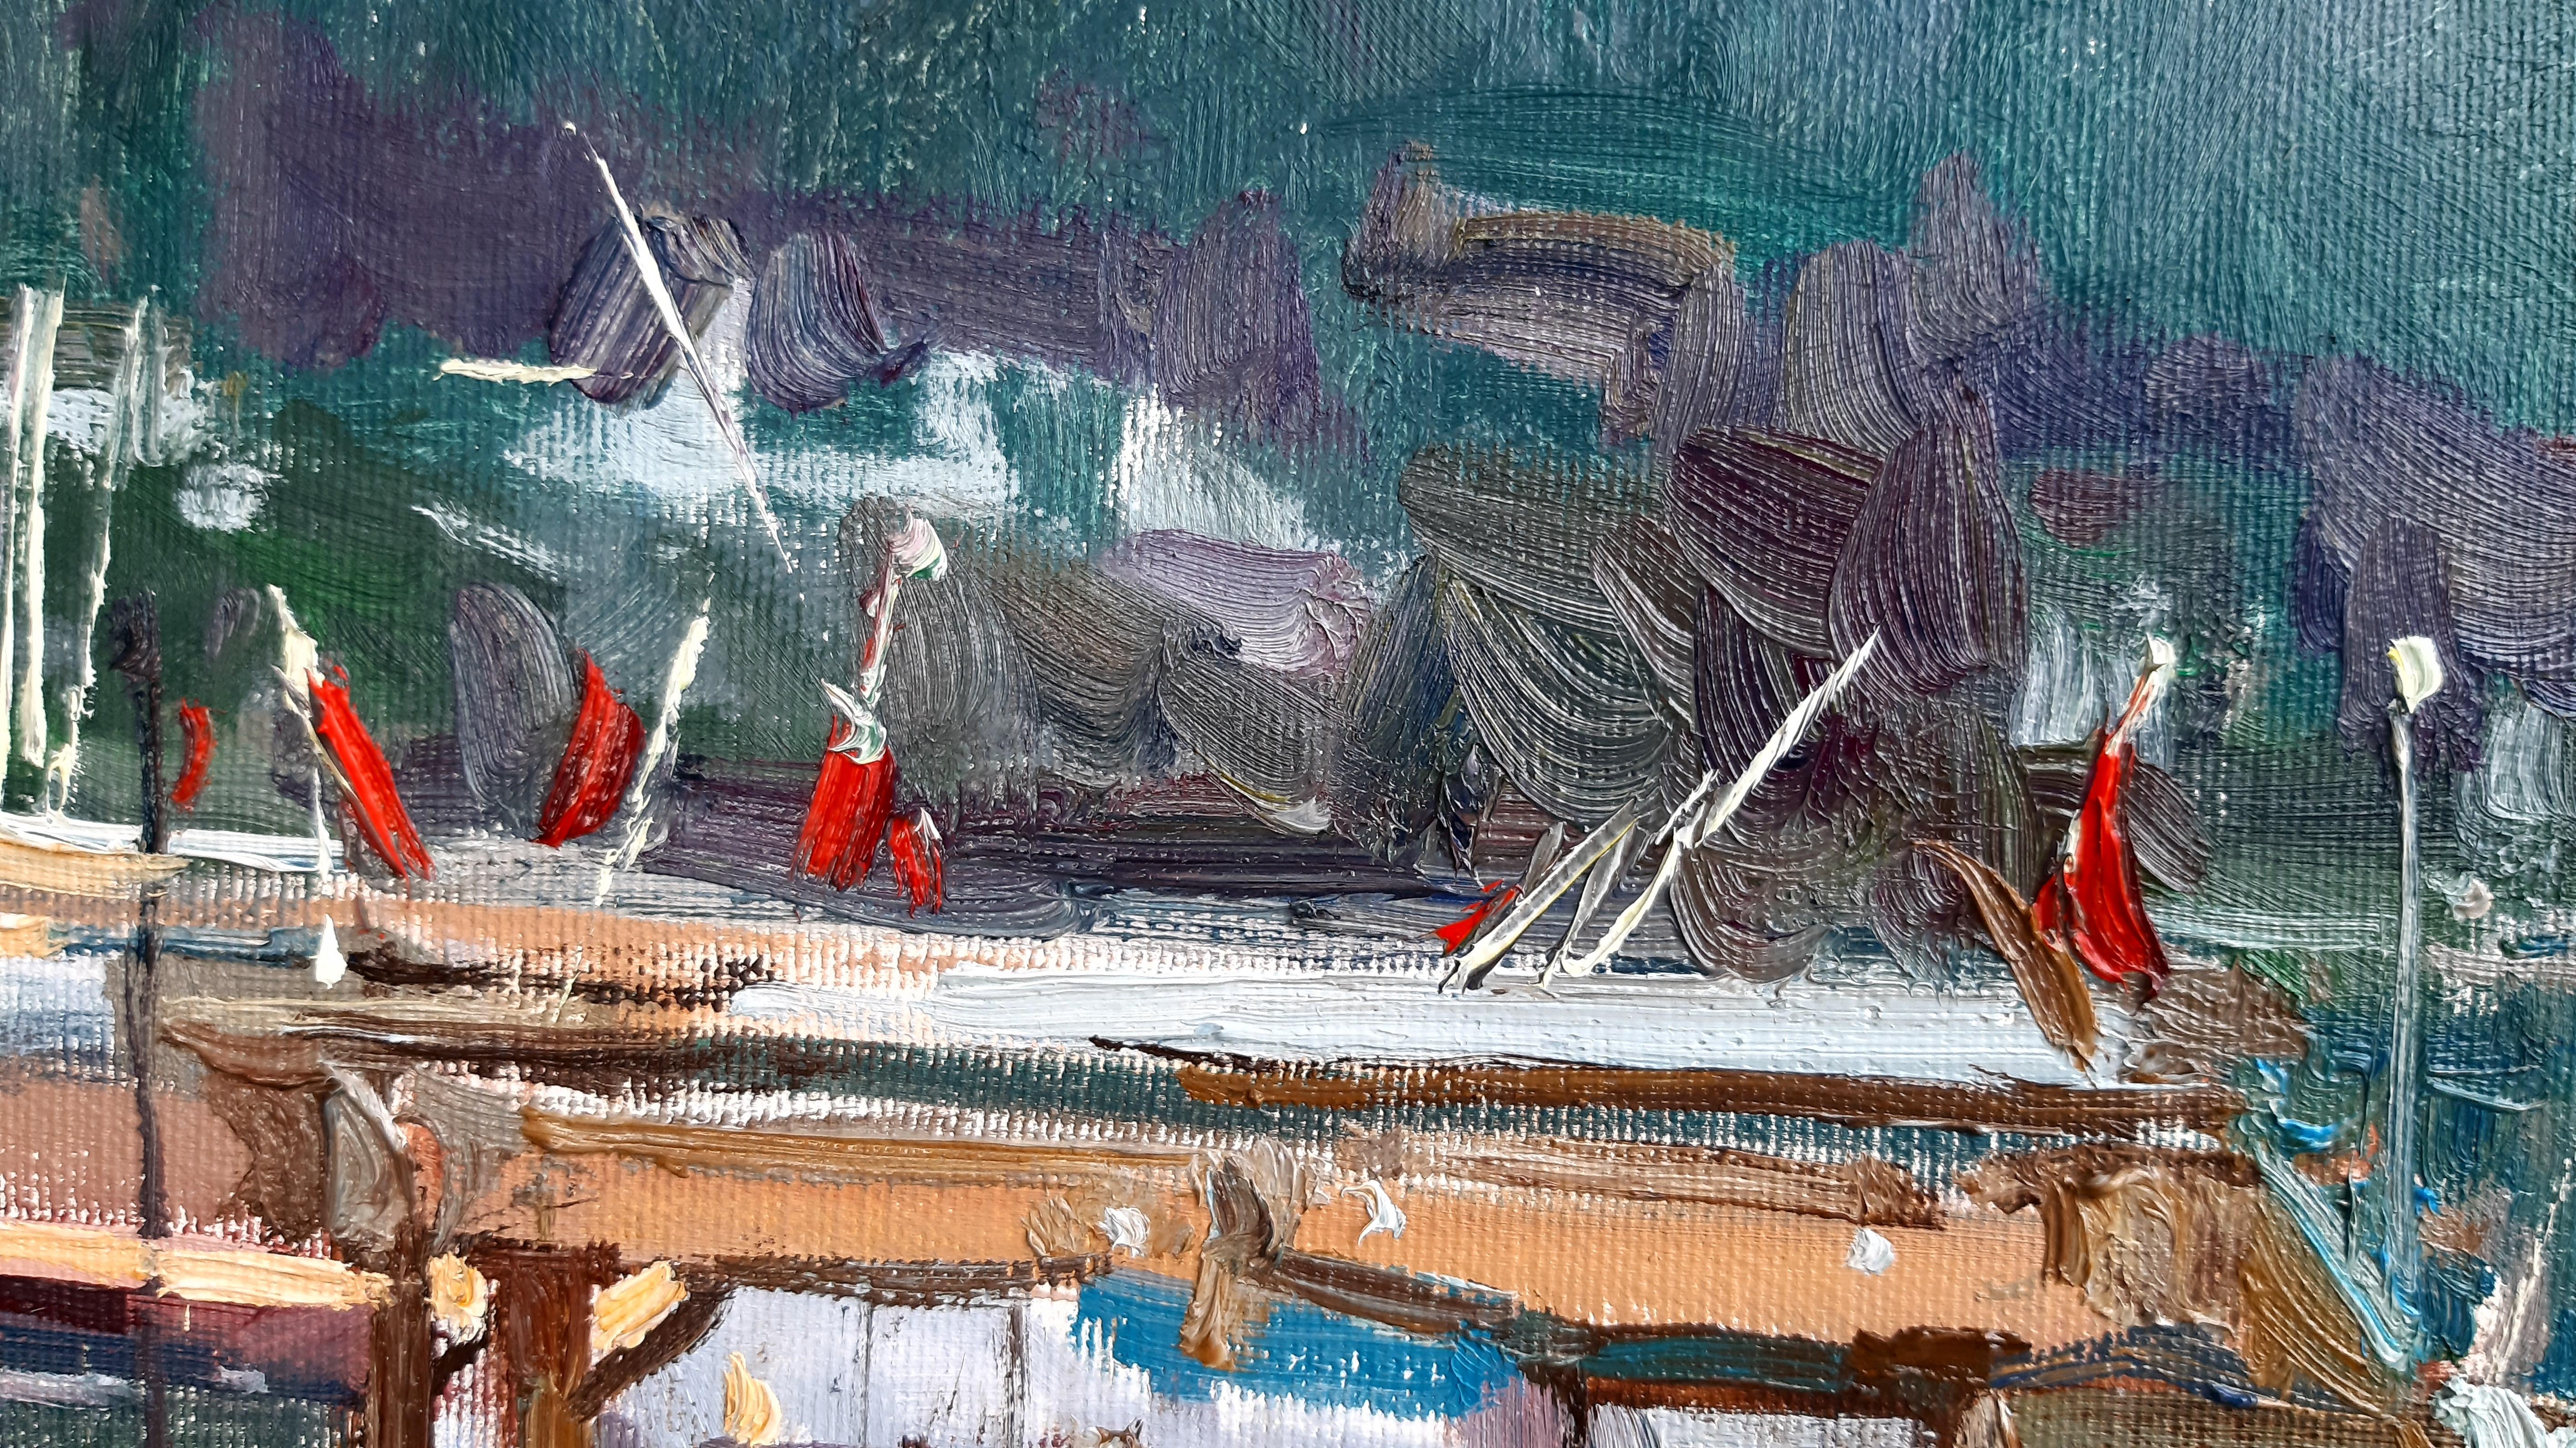 Wharf – maritime Landschaft, Gemälde in Farben Blau, Grün, Weiß, Braun und Grau 1